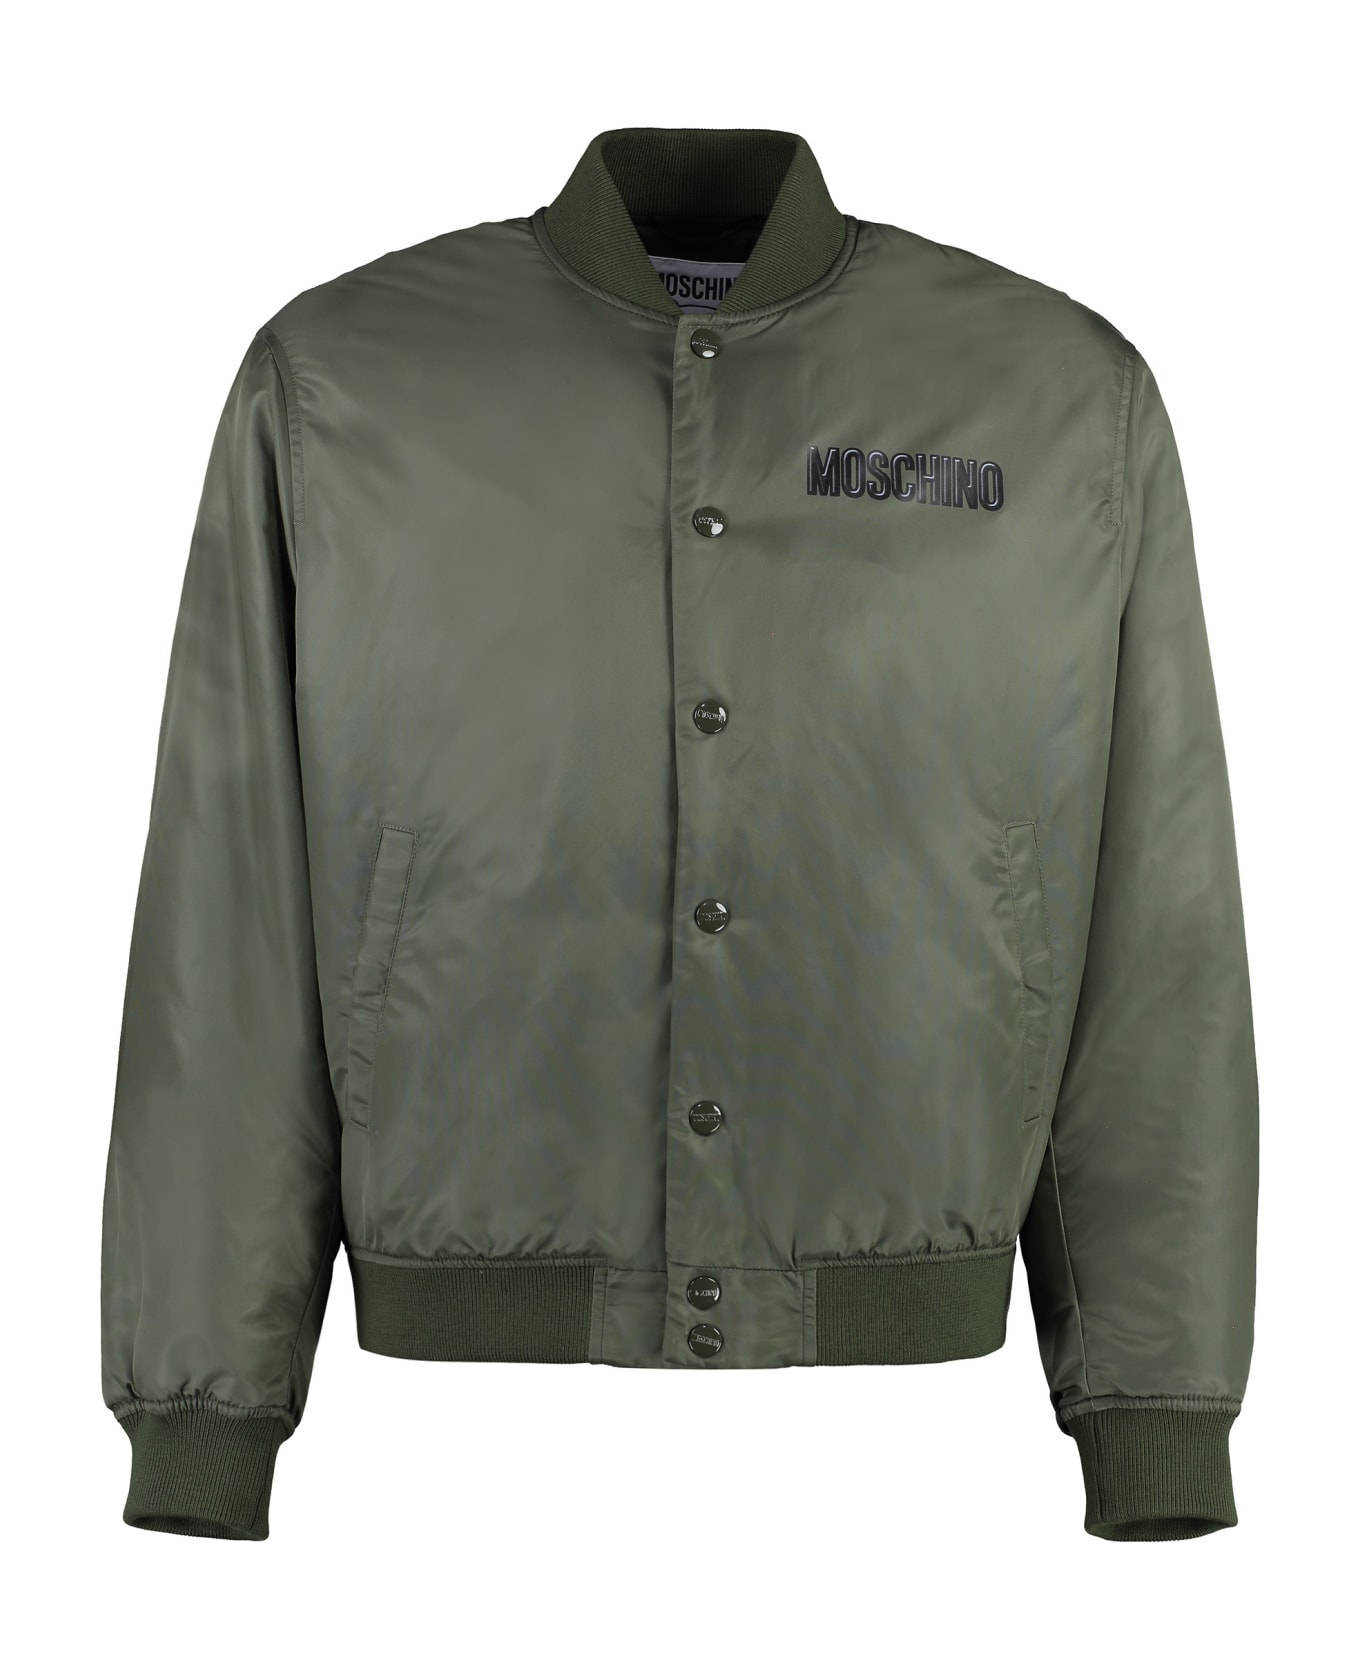 Moschino Nylon Bomber Jacket - green ジャケット